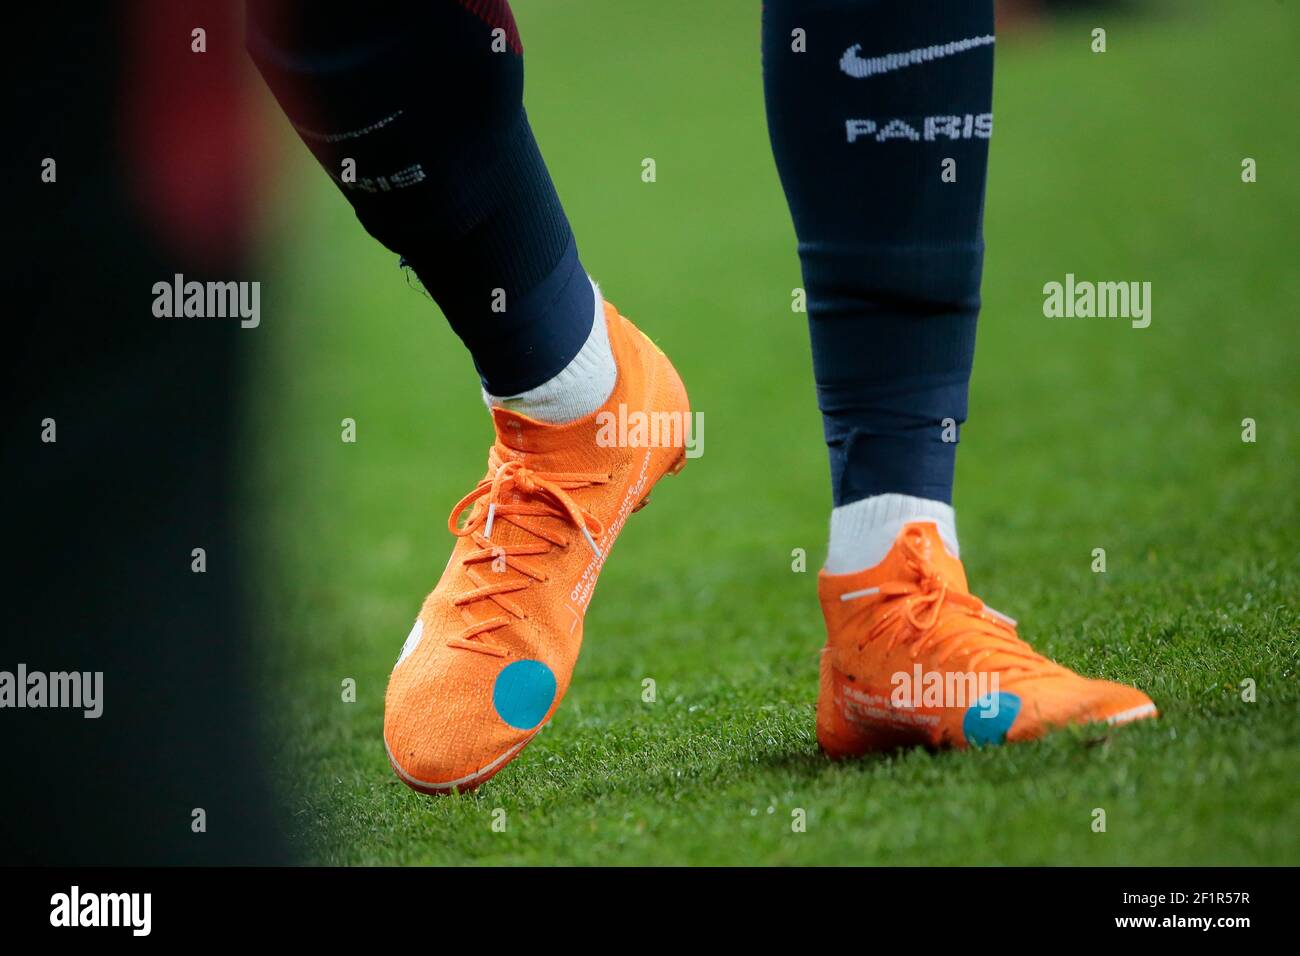 Zapatos de Kylian Mbappe (PSG), Off-White ™ para NIKE 'Nike Mercurial Vapore' Beaverton, Oregon USA c. 2018 'KNIT', durante el francés L1 partido de fútbol entre Saint-Germain y Mónaco,